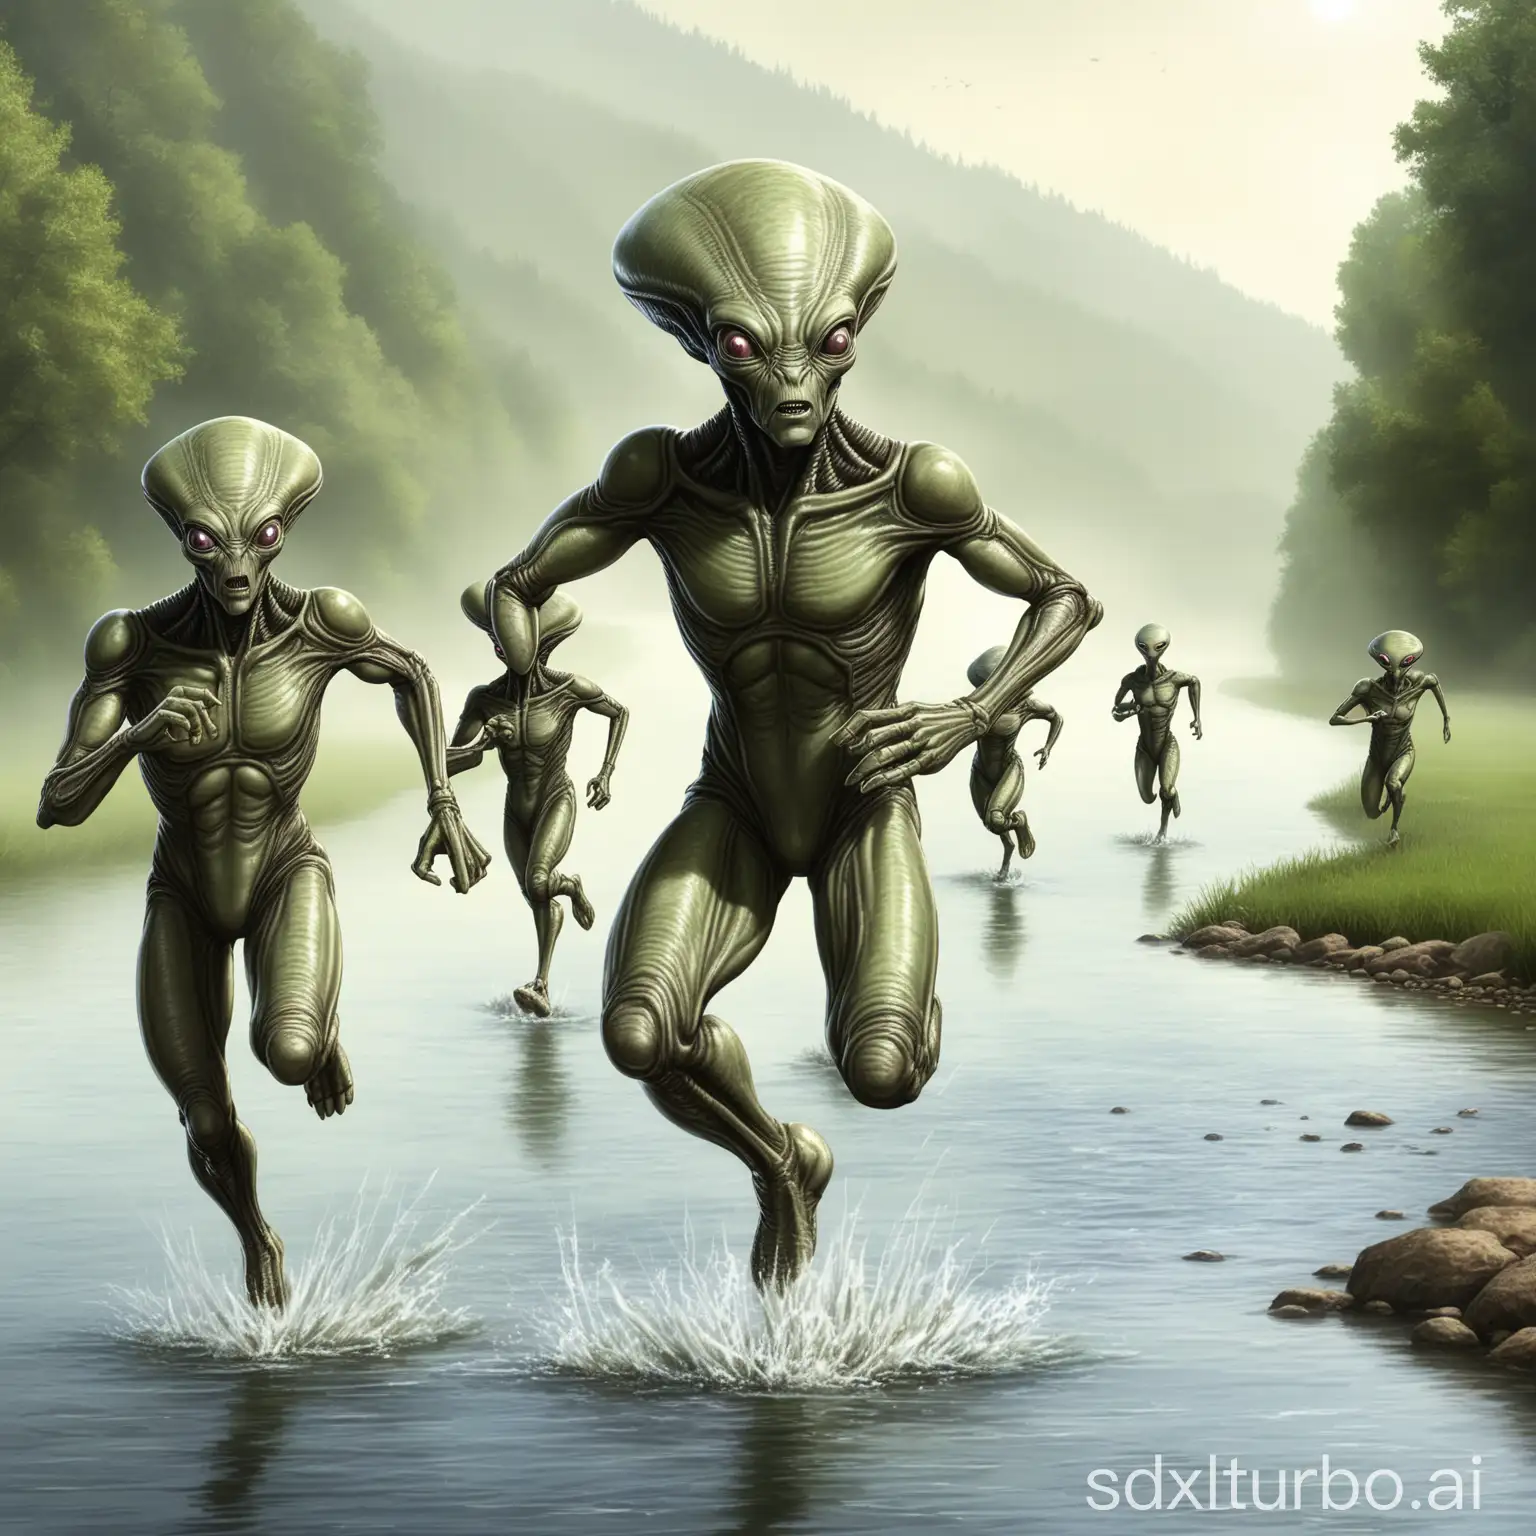 river-side running aliens